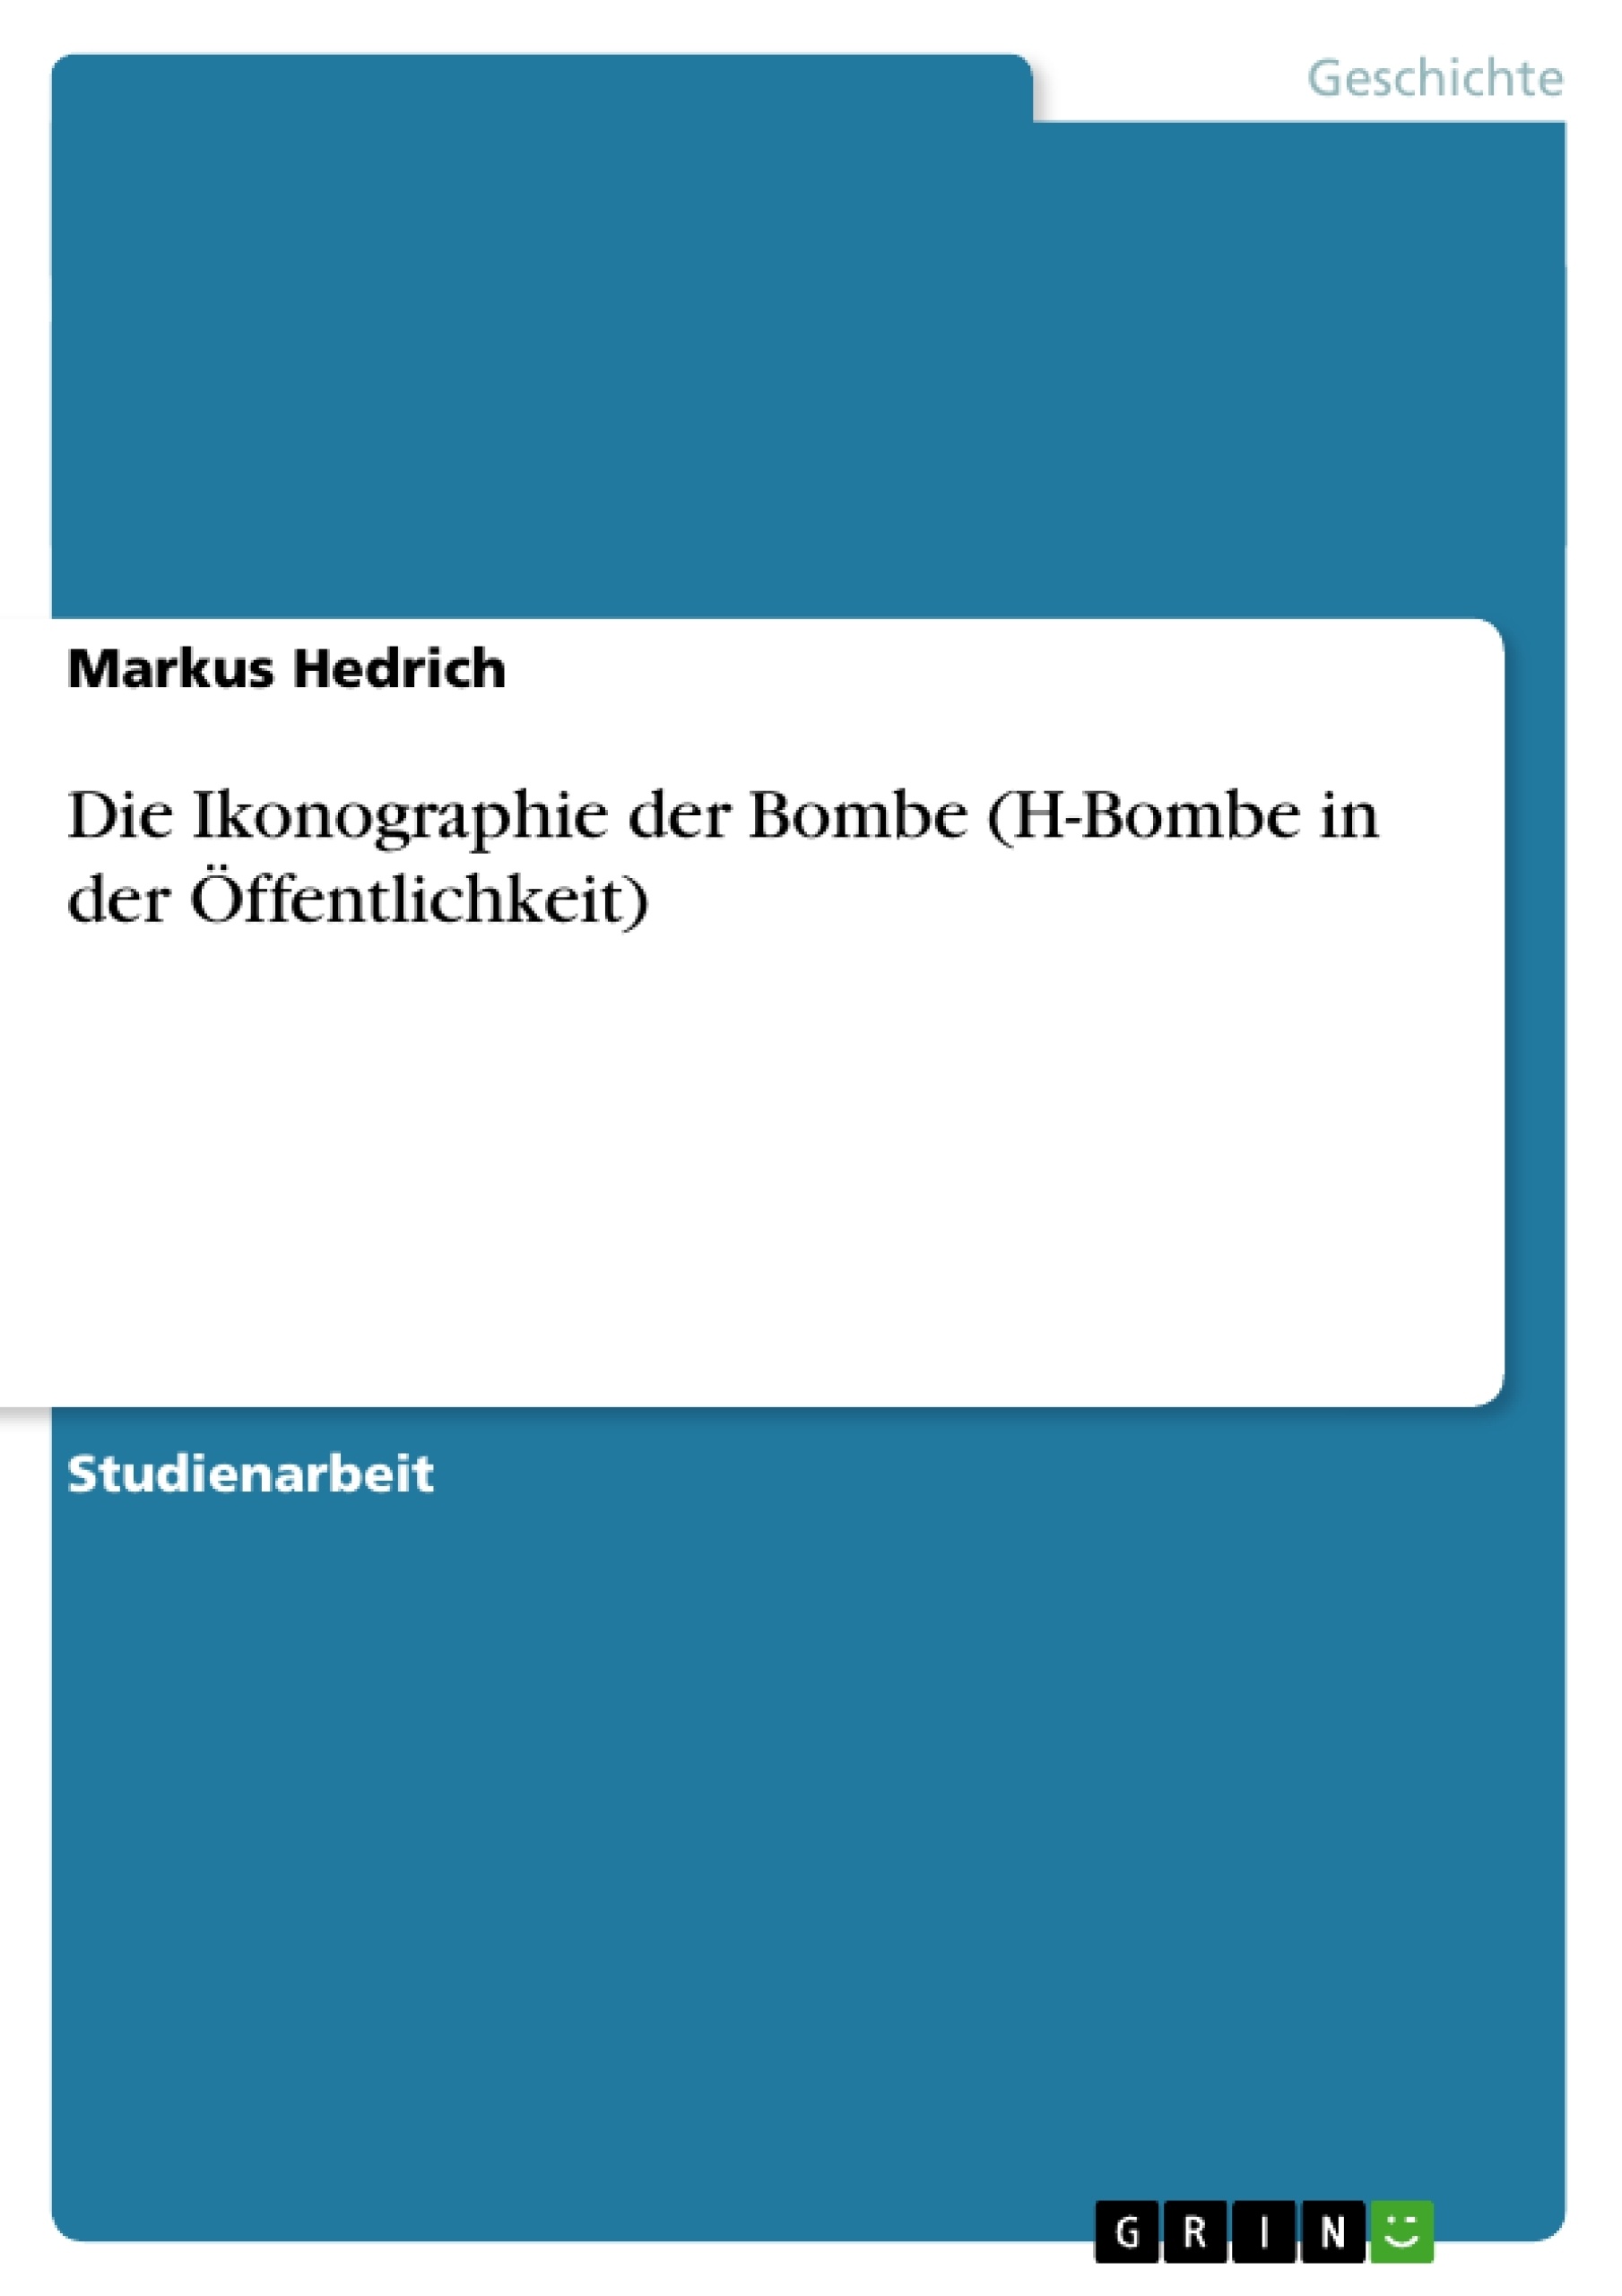 Título: Die Ikonographie der Bombe (H-Bombe in der Öffentlichkeit)